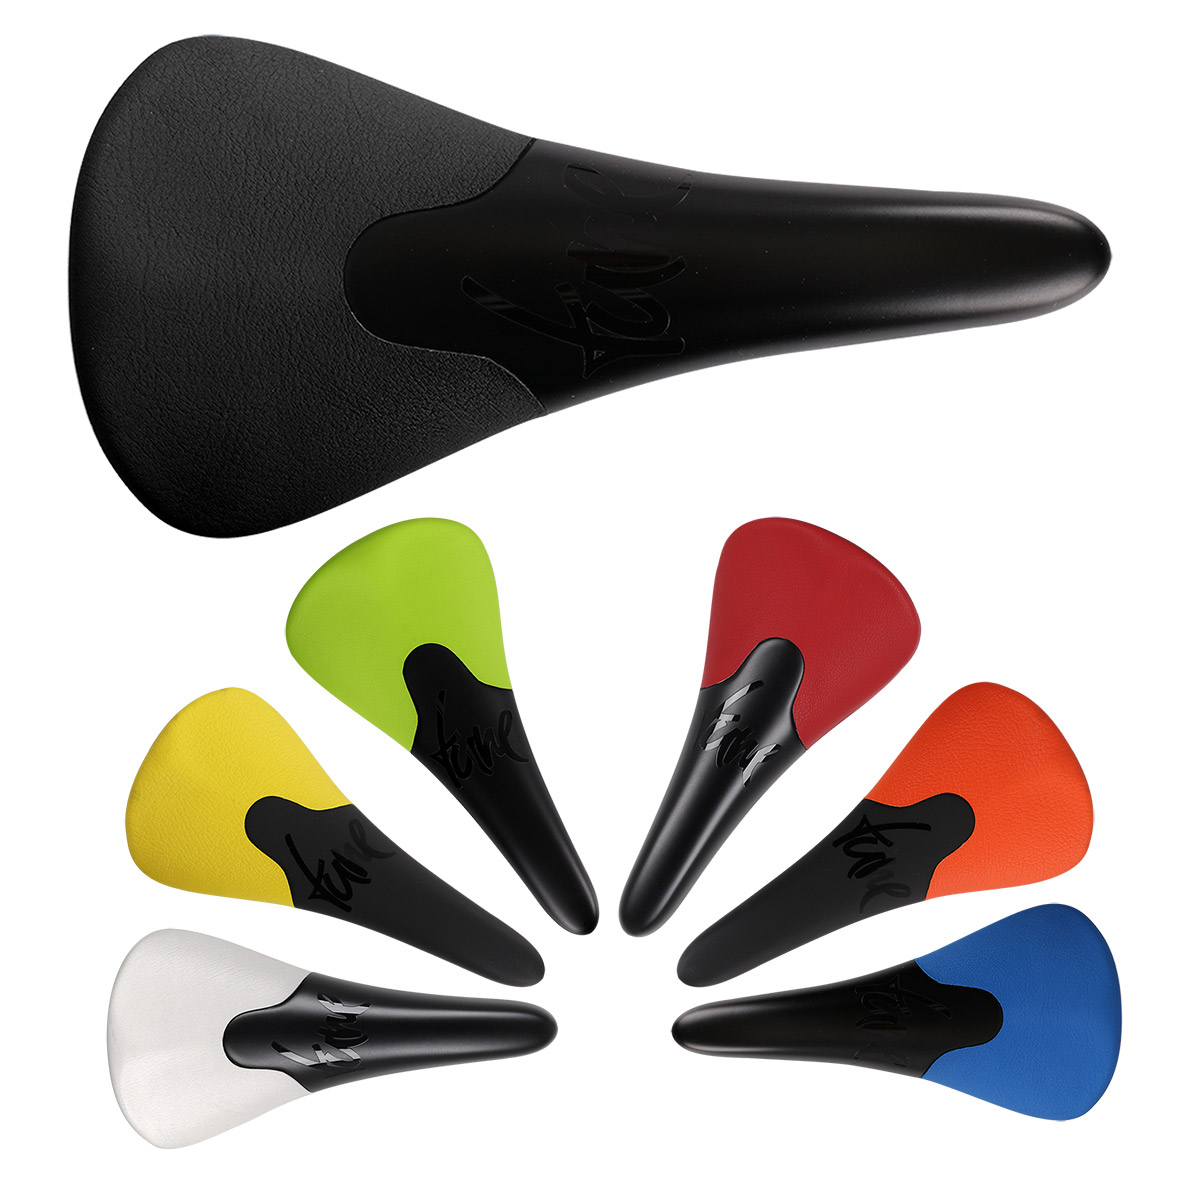 Productfoto van Tune Komm-Vor Carbon Saddle - different colors